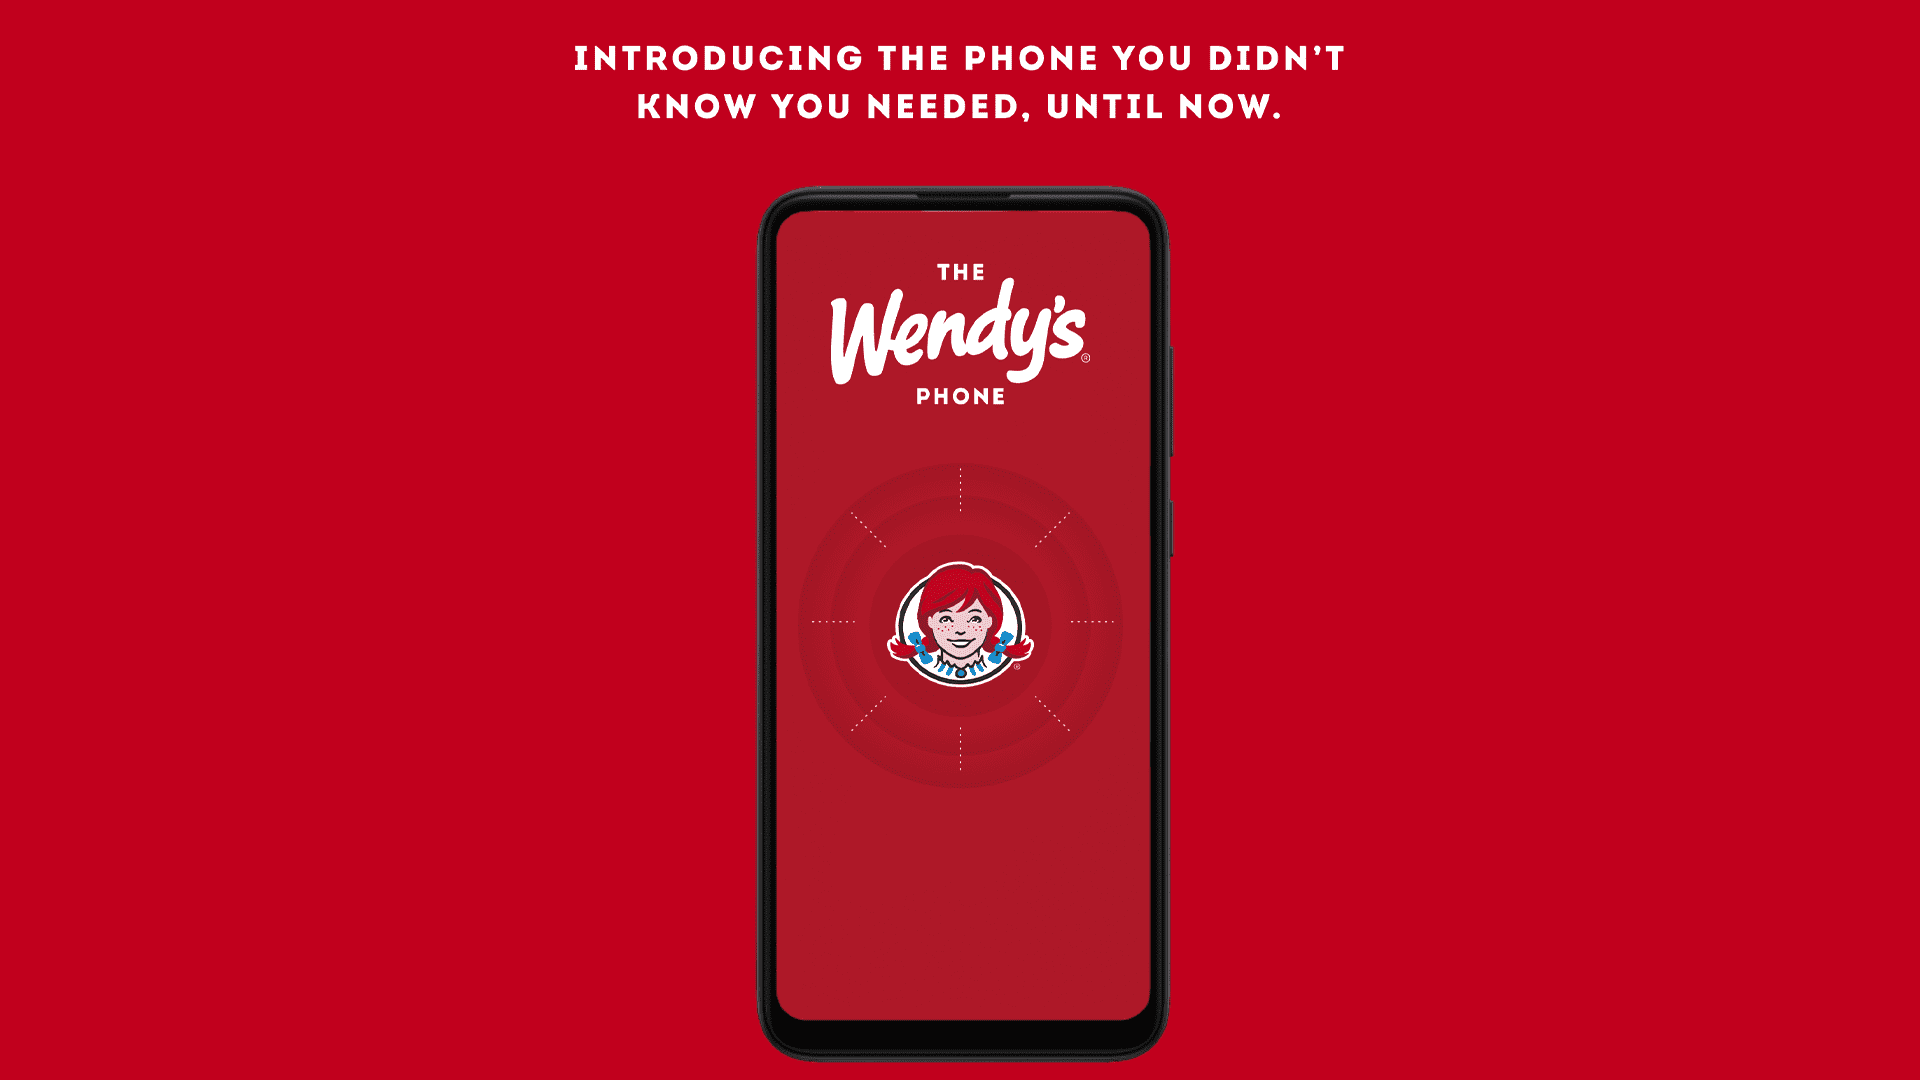 Nu har du chansen att vinna en begränsad upplaga av Wendys telefon för lolwut lol haha